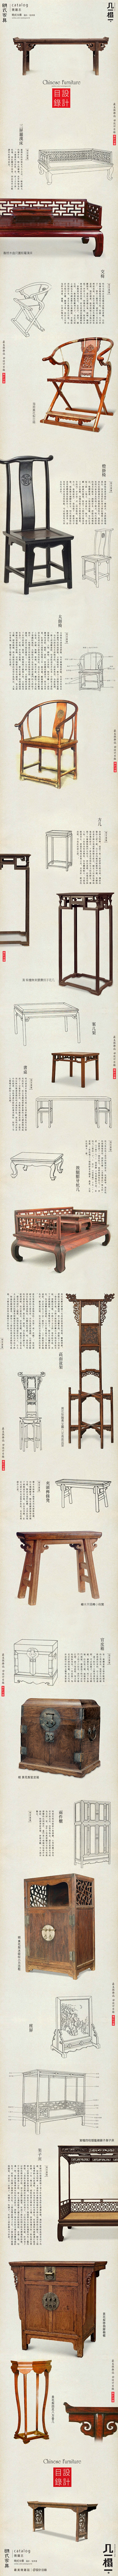 @设计目录：明式家具 | 中國美學基於以...